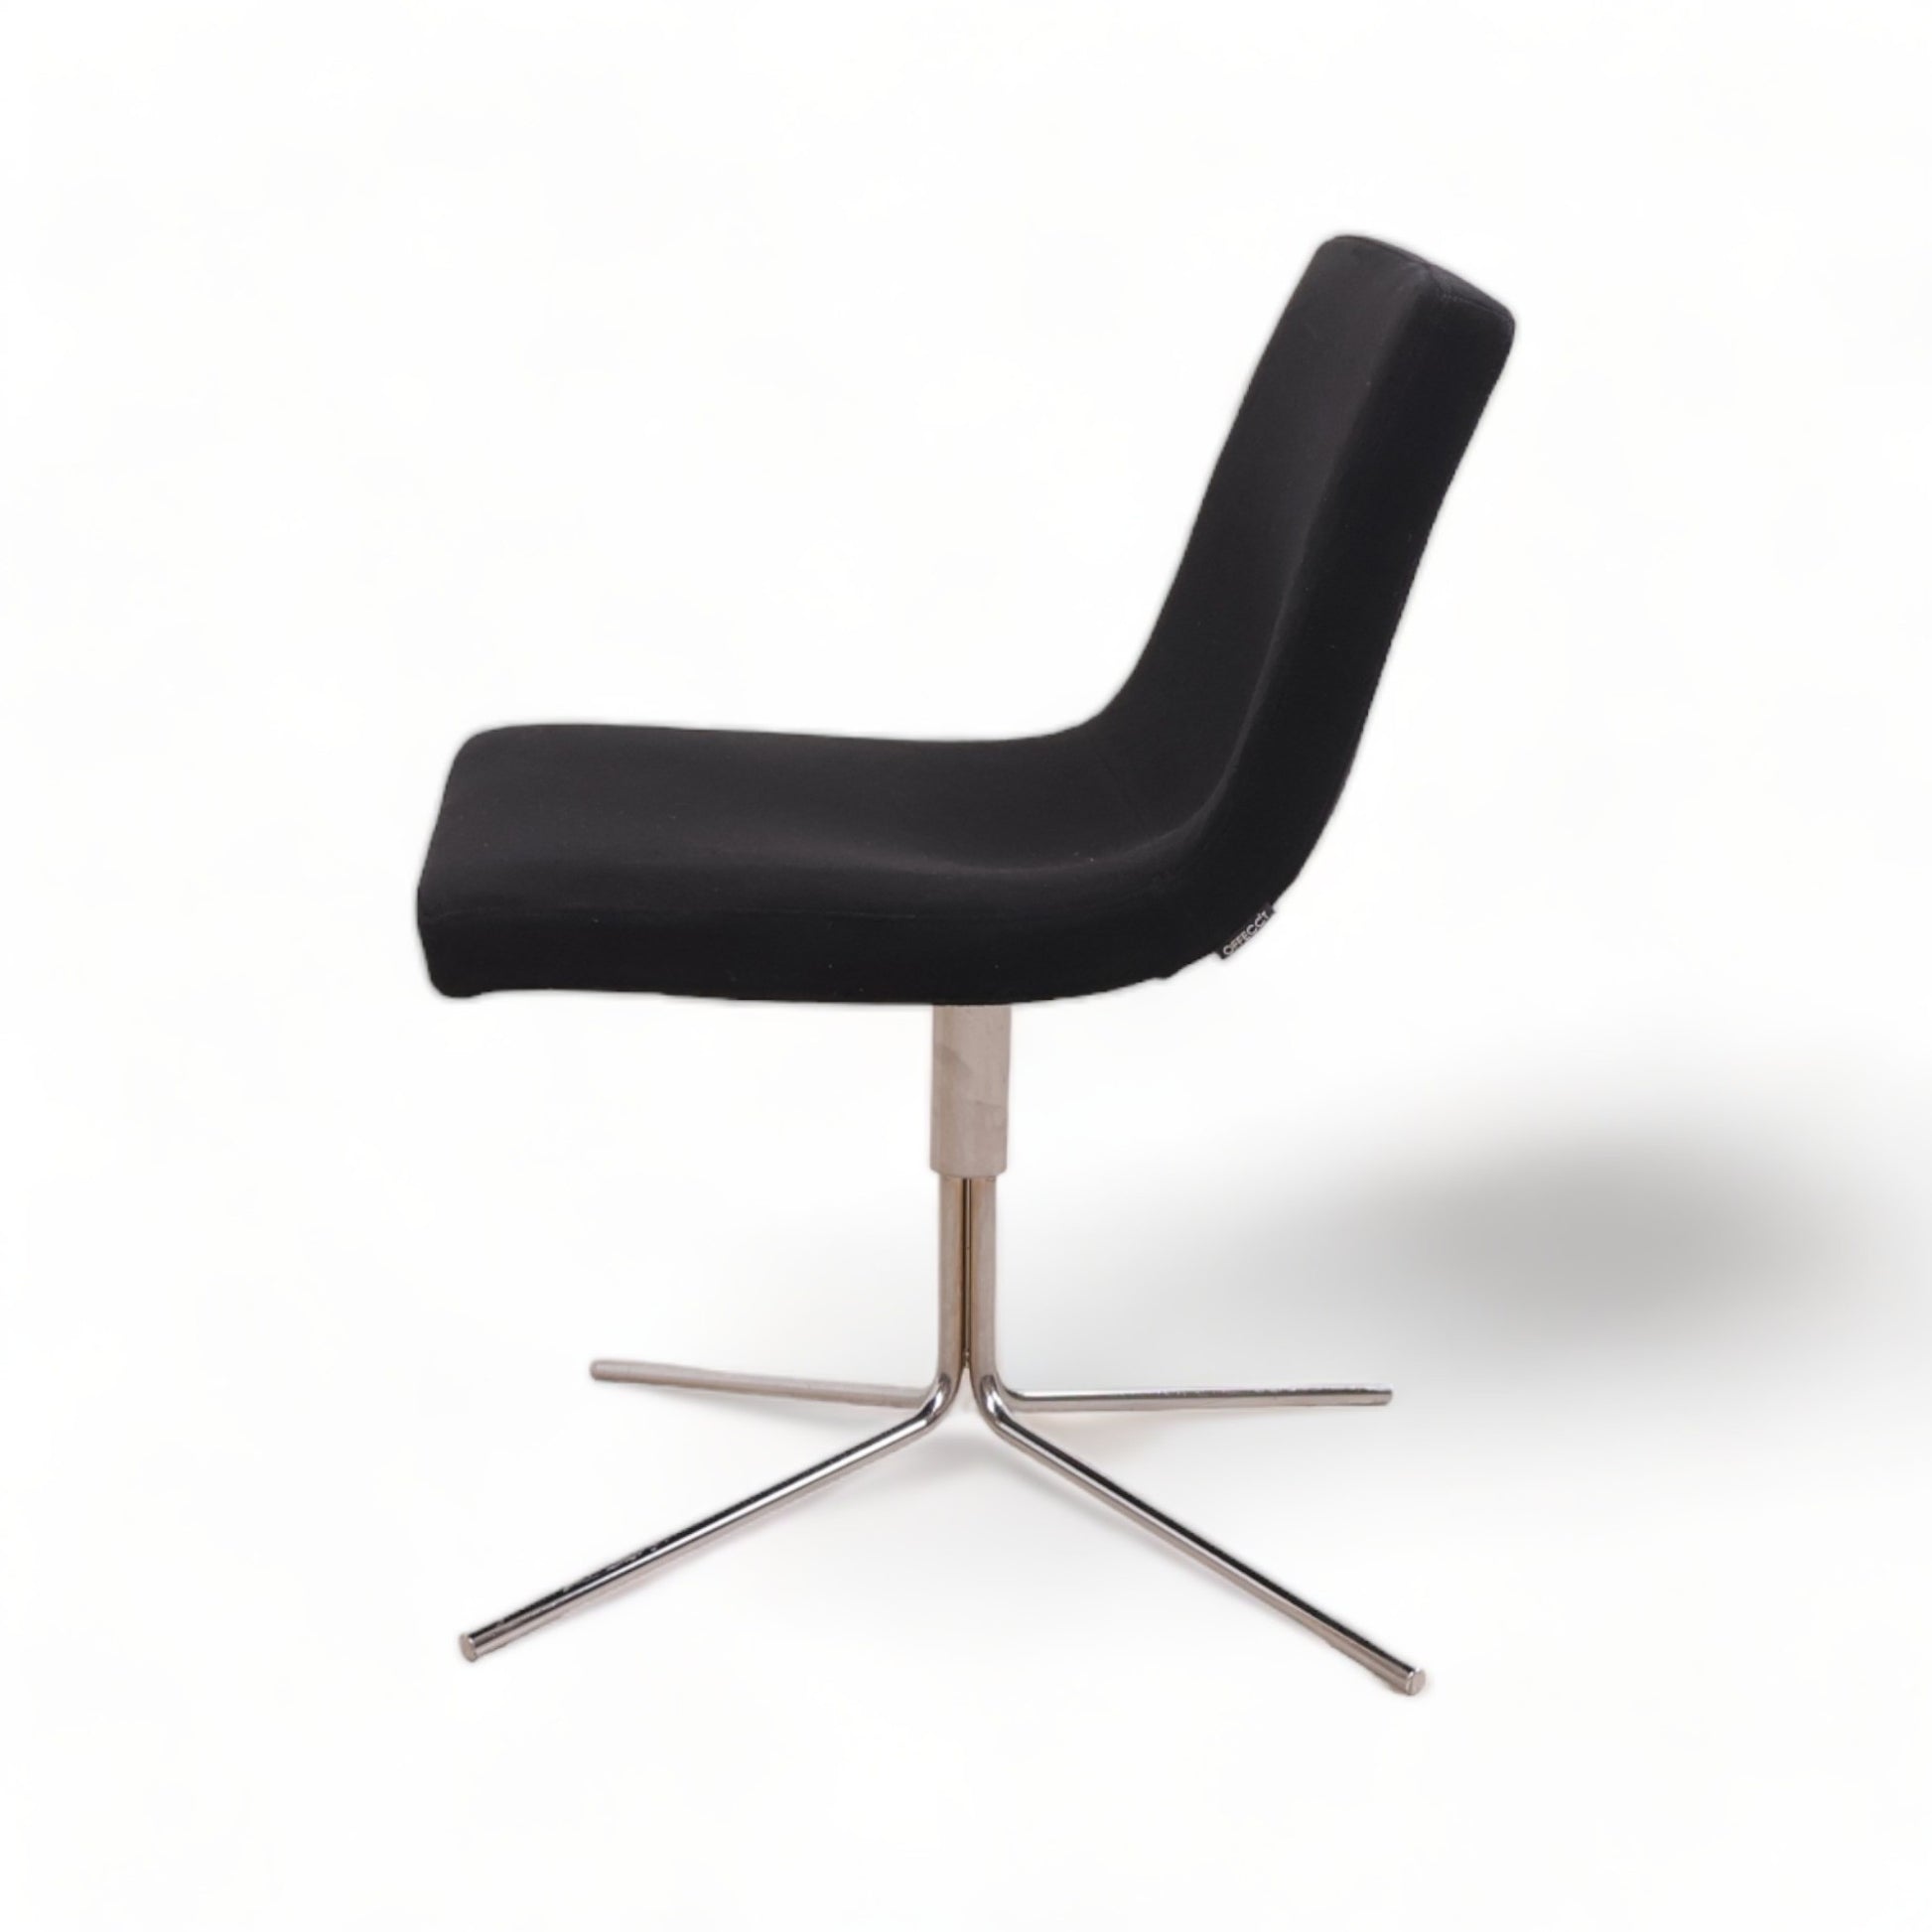 Nyrenset | Offecct Bond Easy stol i sort ull / krom